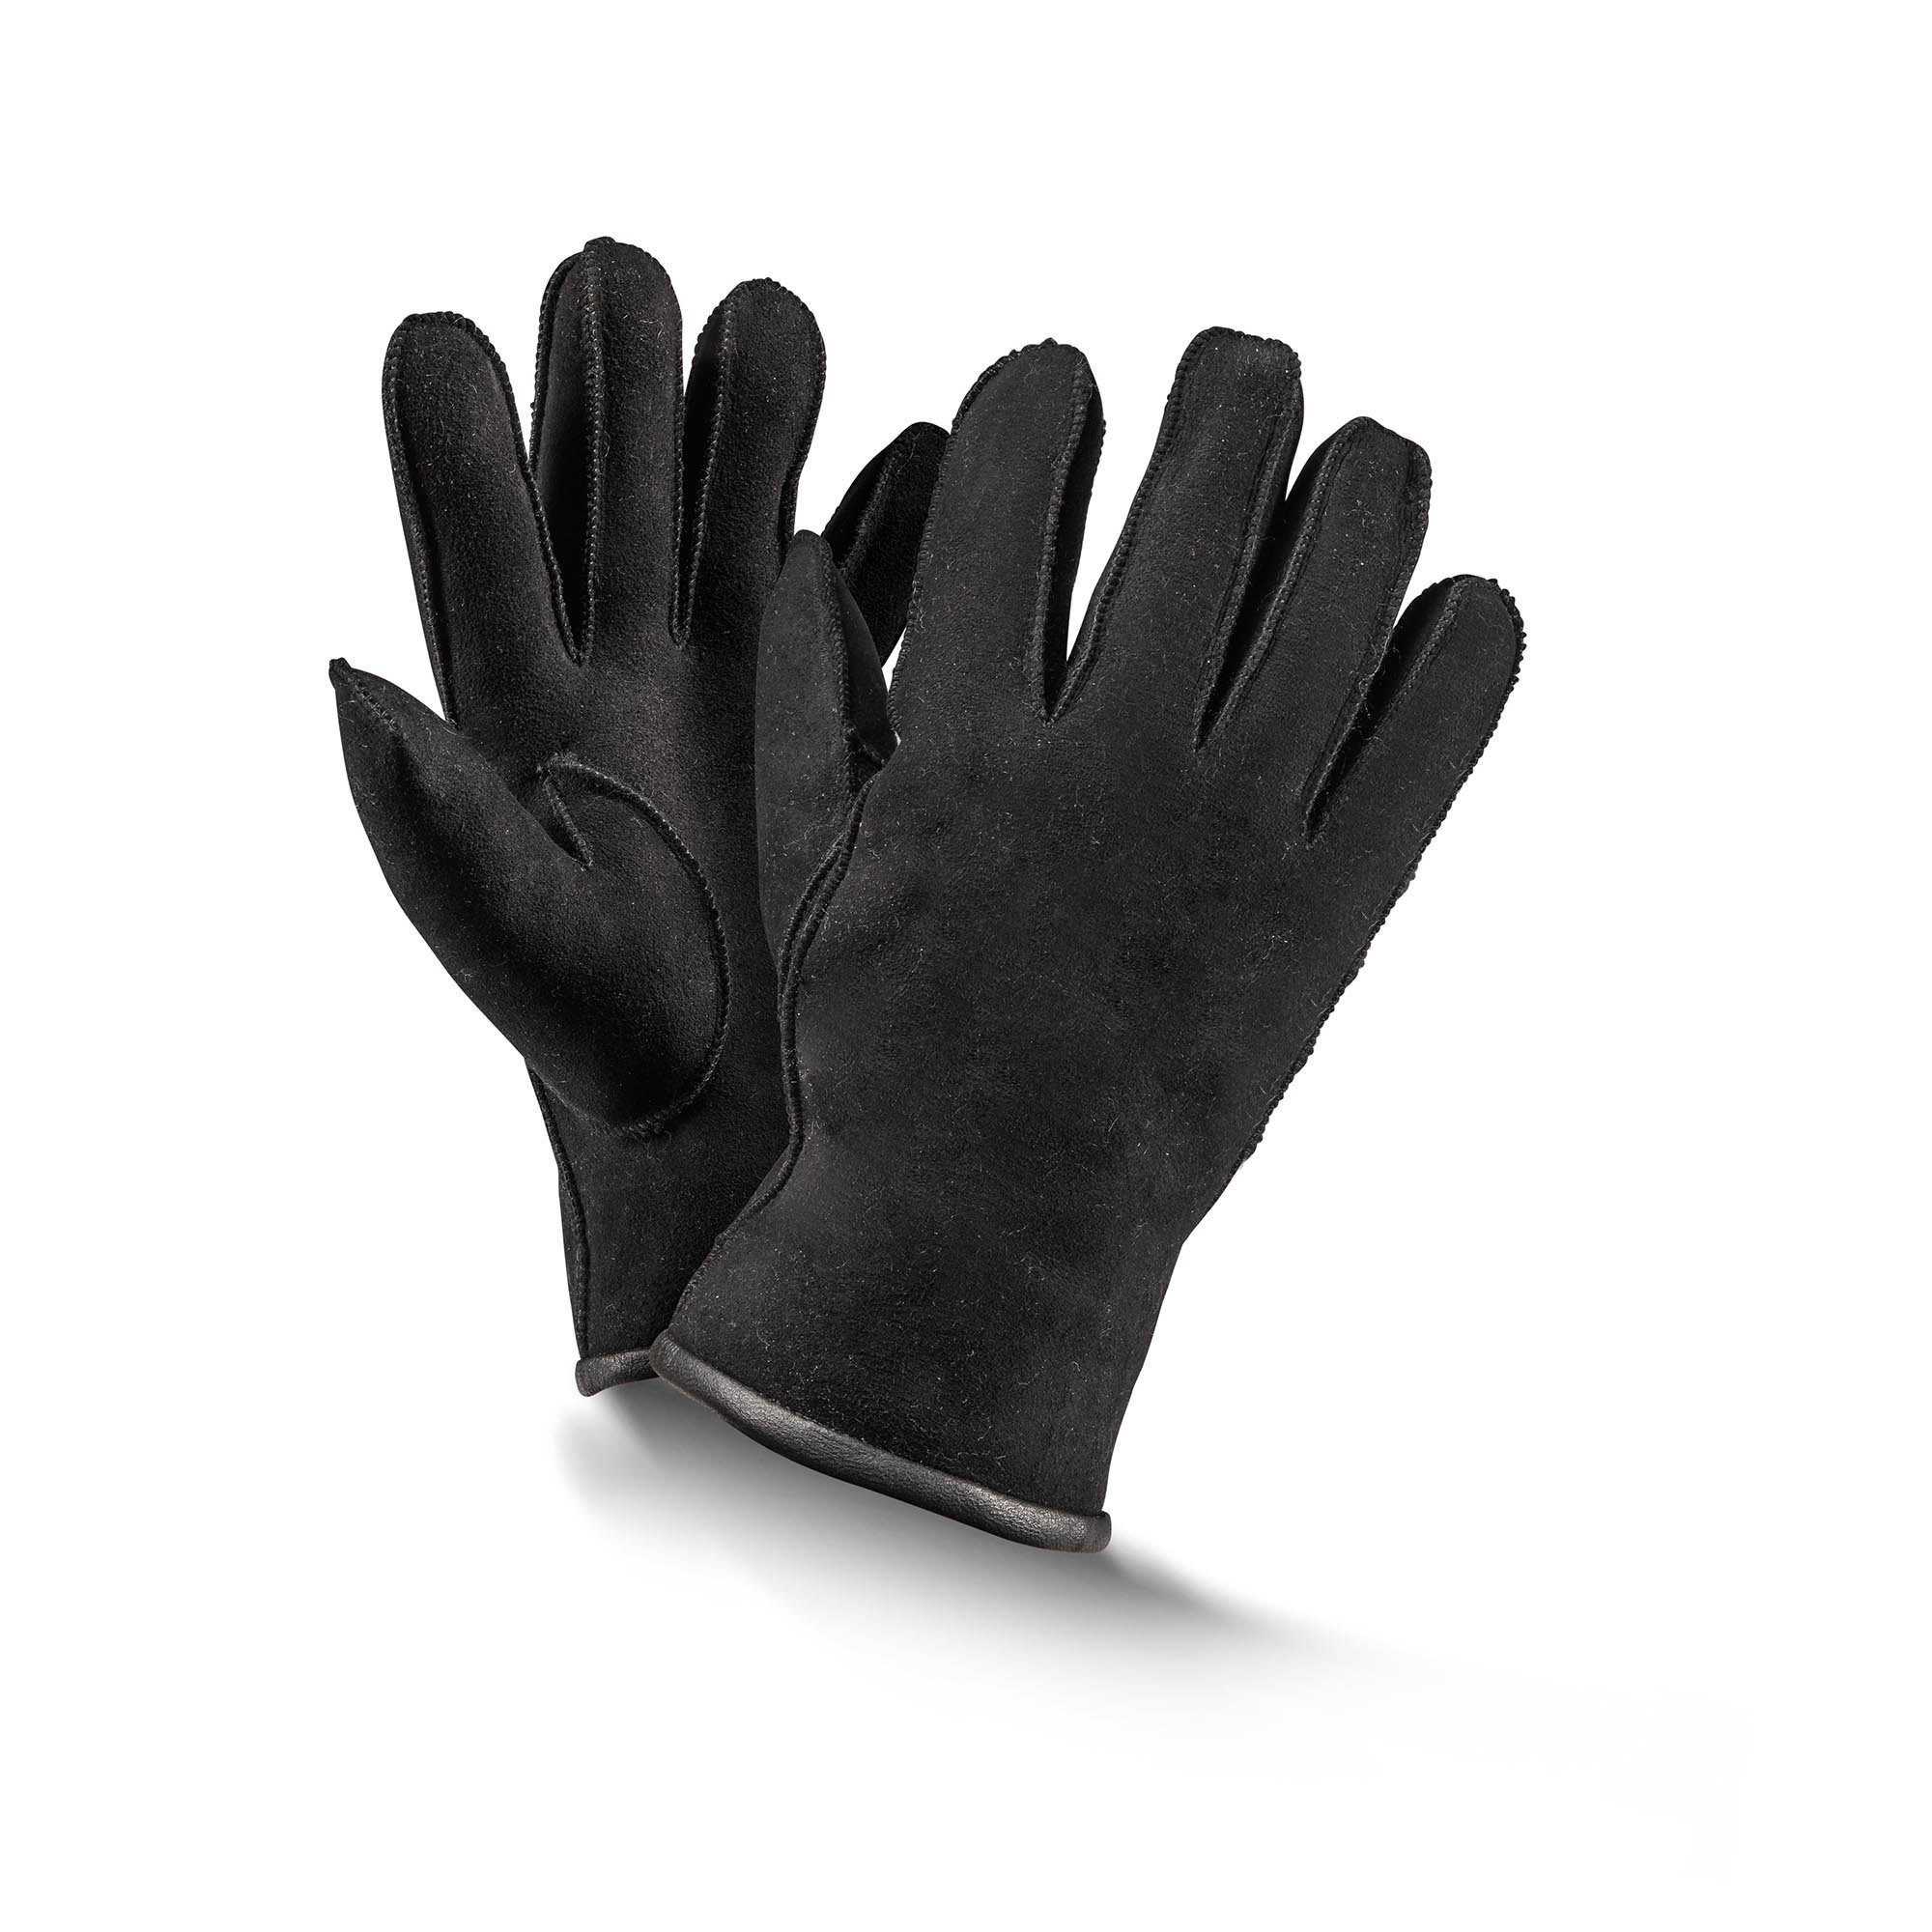 Fellhof Baumwollhandschuhe Handschuhe Fingerhandschuhe Basic schwarz/ braun/ grau Gr 6-10 | Handschuhe